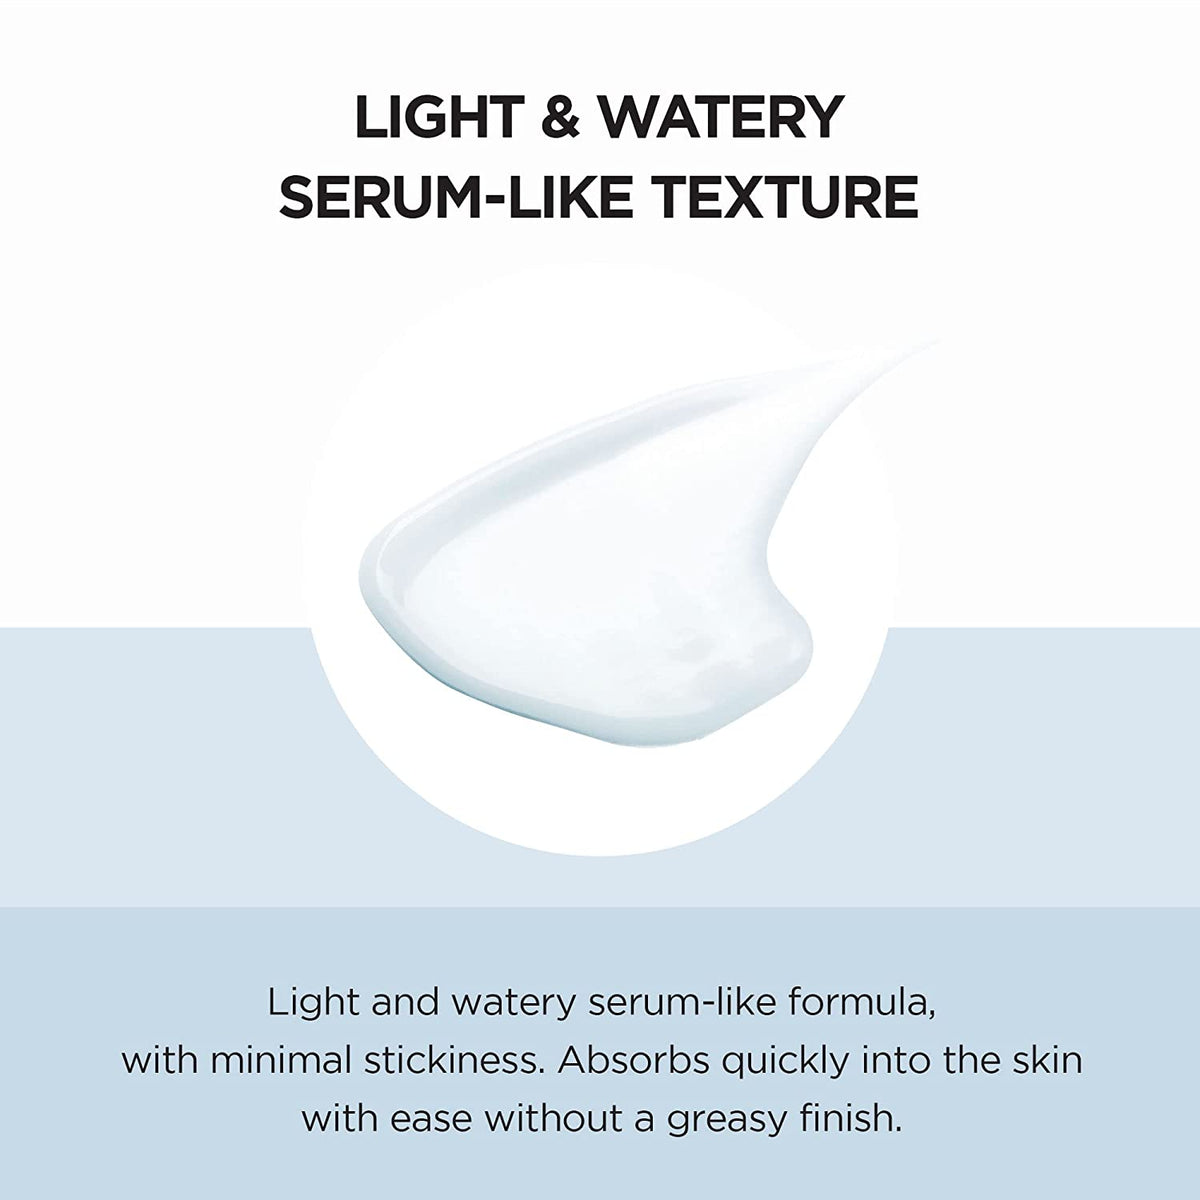 Skin1004 - Hyalu-CICA Water-Fit Sun Serum 50ml Twin Pack 50ml x 2